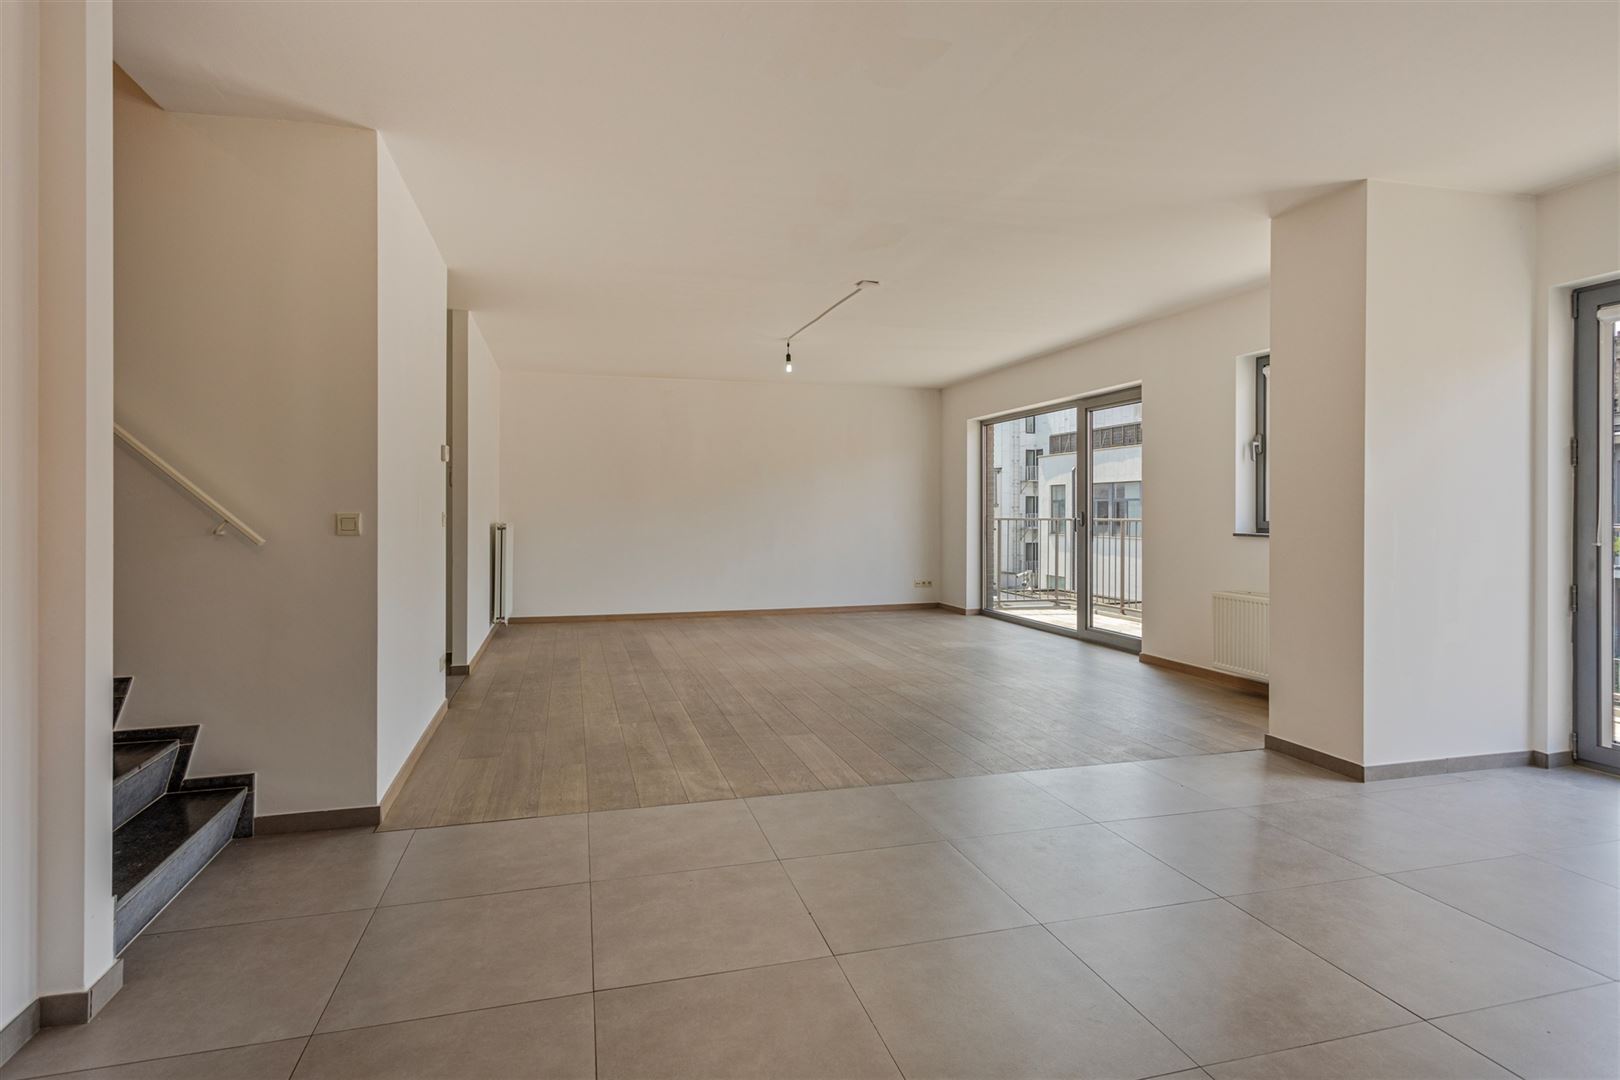 Duplex appartement van 168 m² op Eilandje met dubbele autostaanplaats foto 3